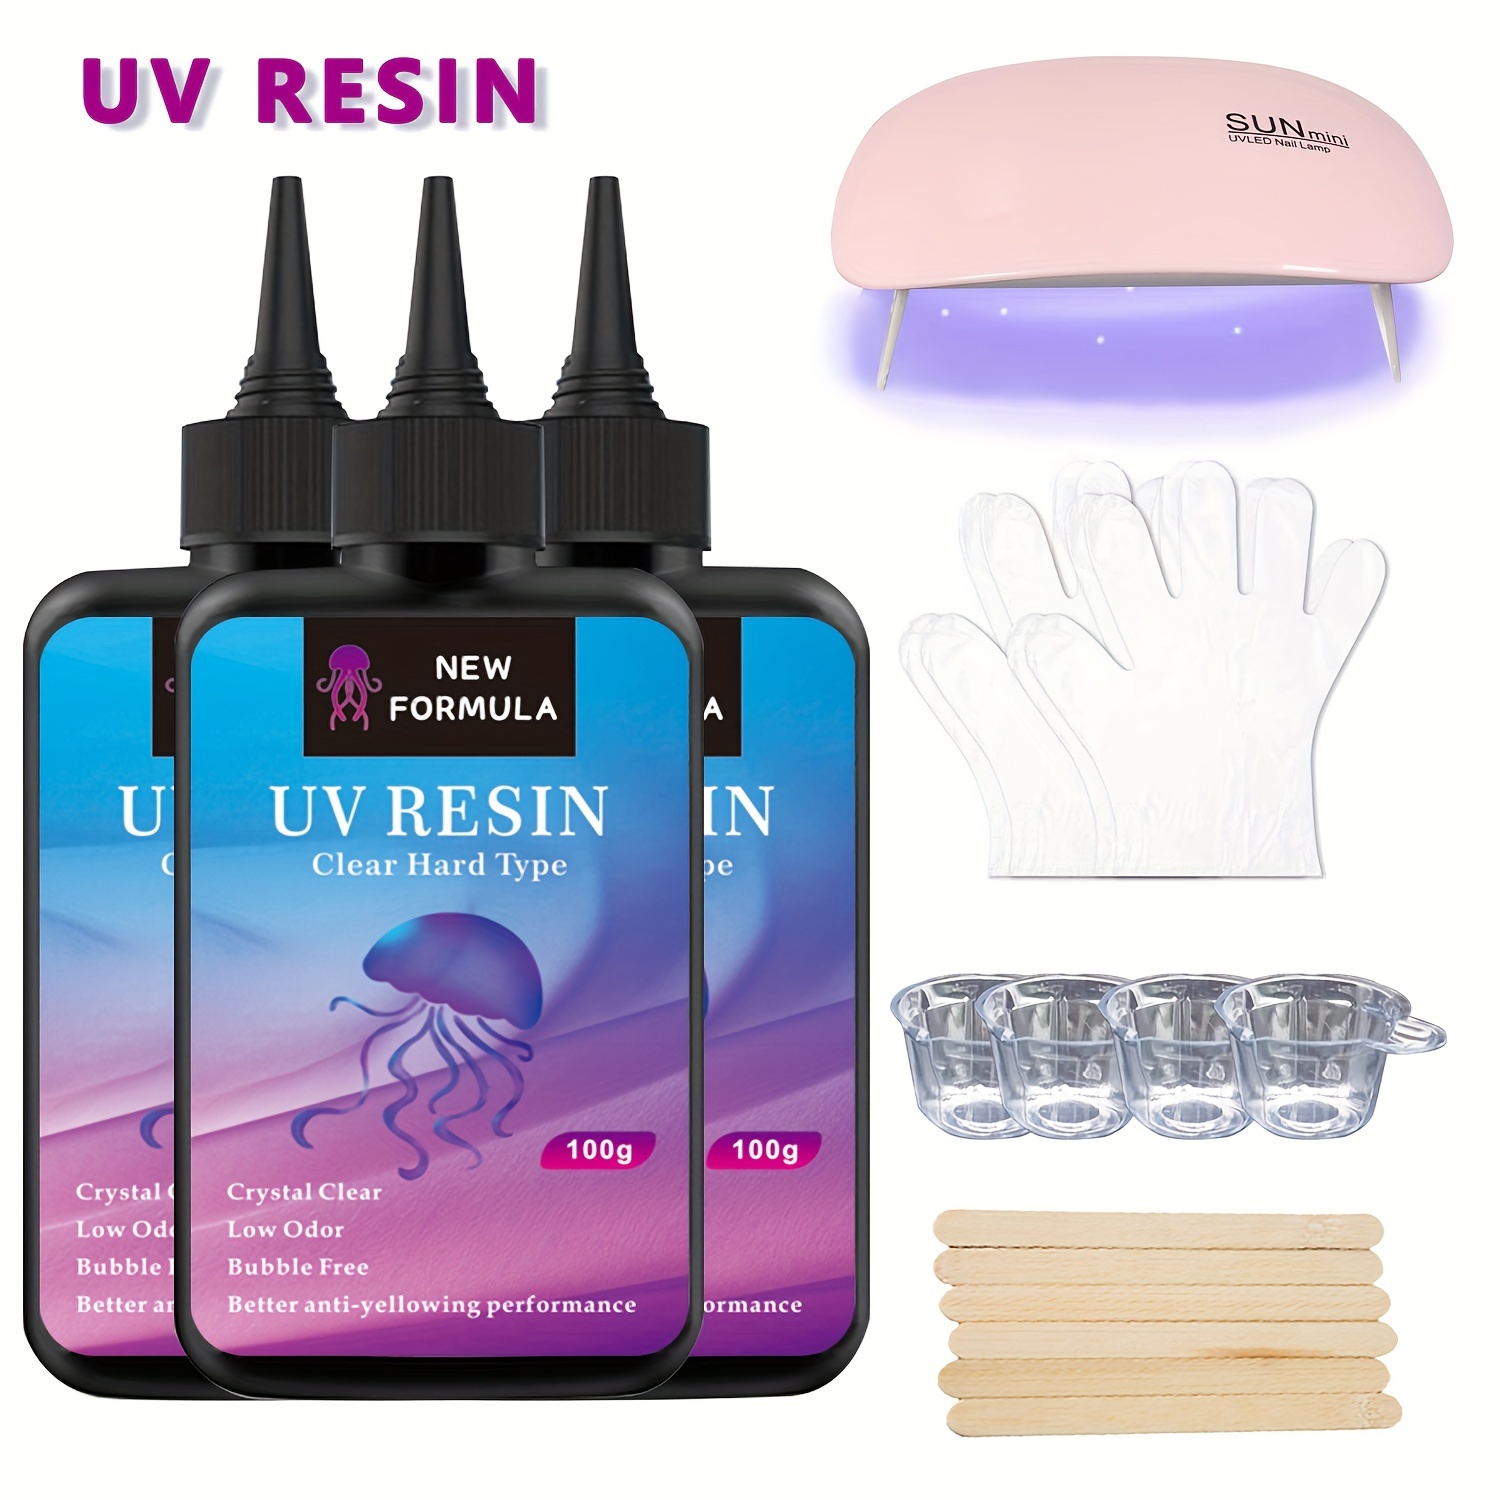 Résine UV - 200g Résine Epoxy UV Transparent Cristallin pour la